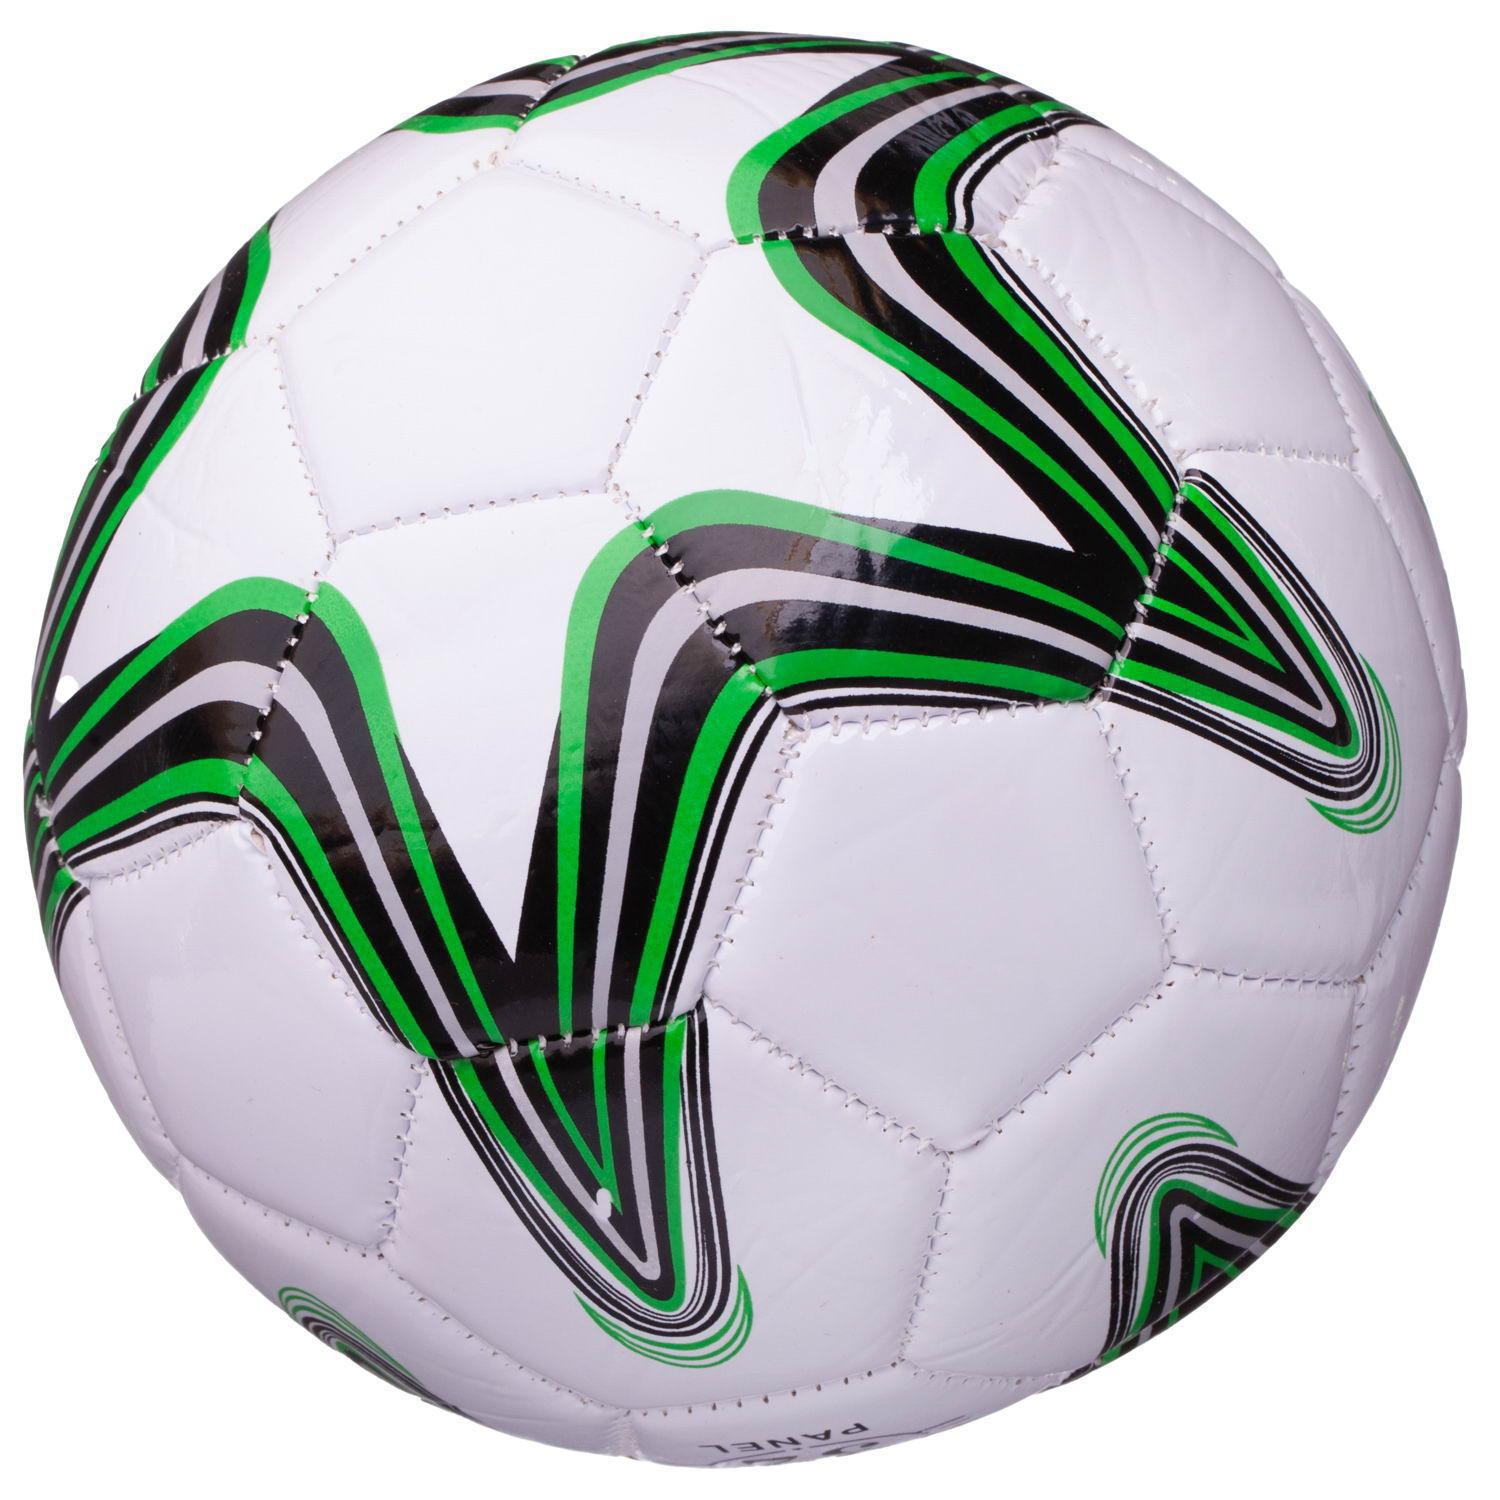 Мяч футбольный Junfa 15см в ассоритменте